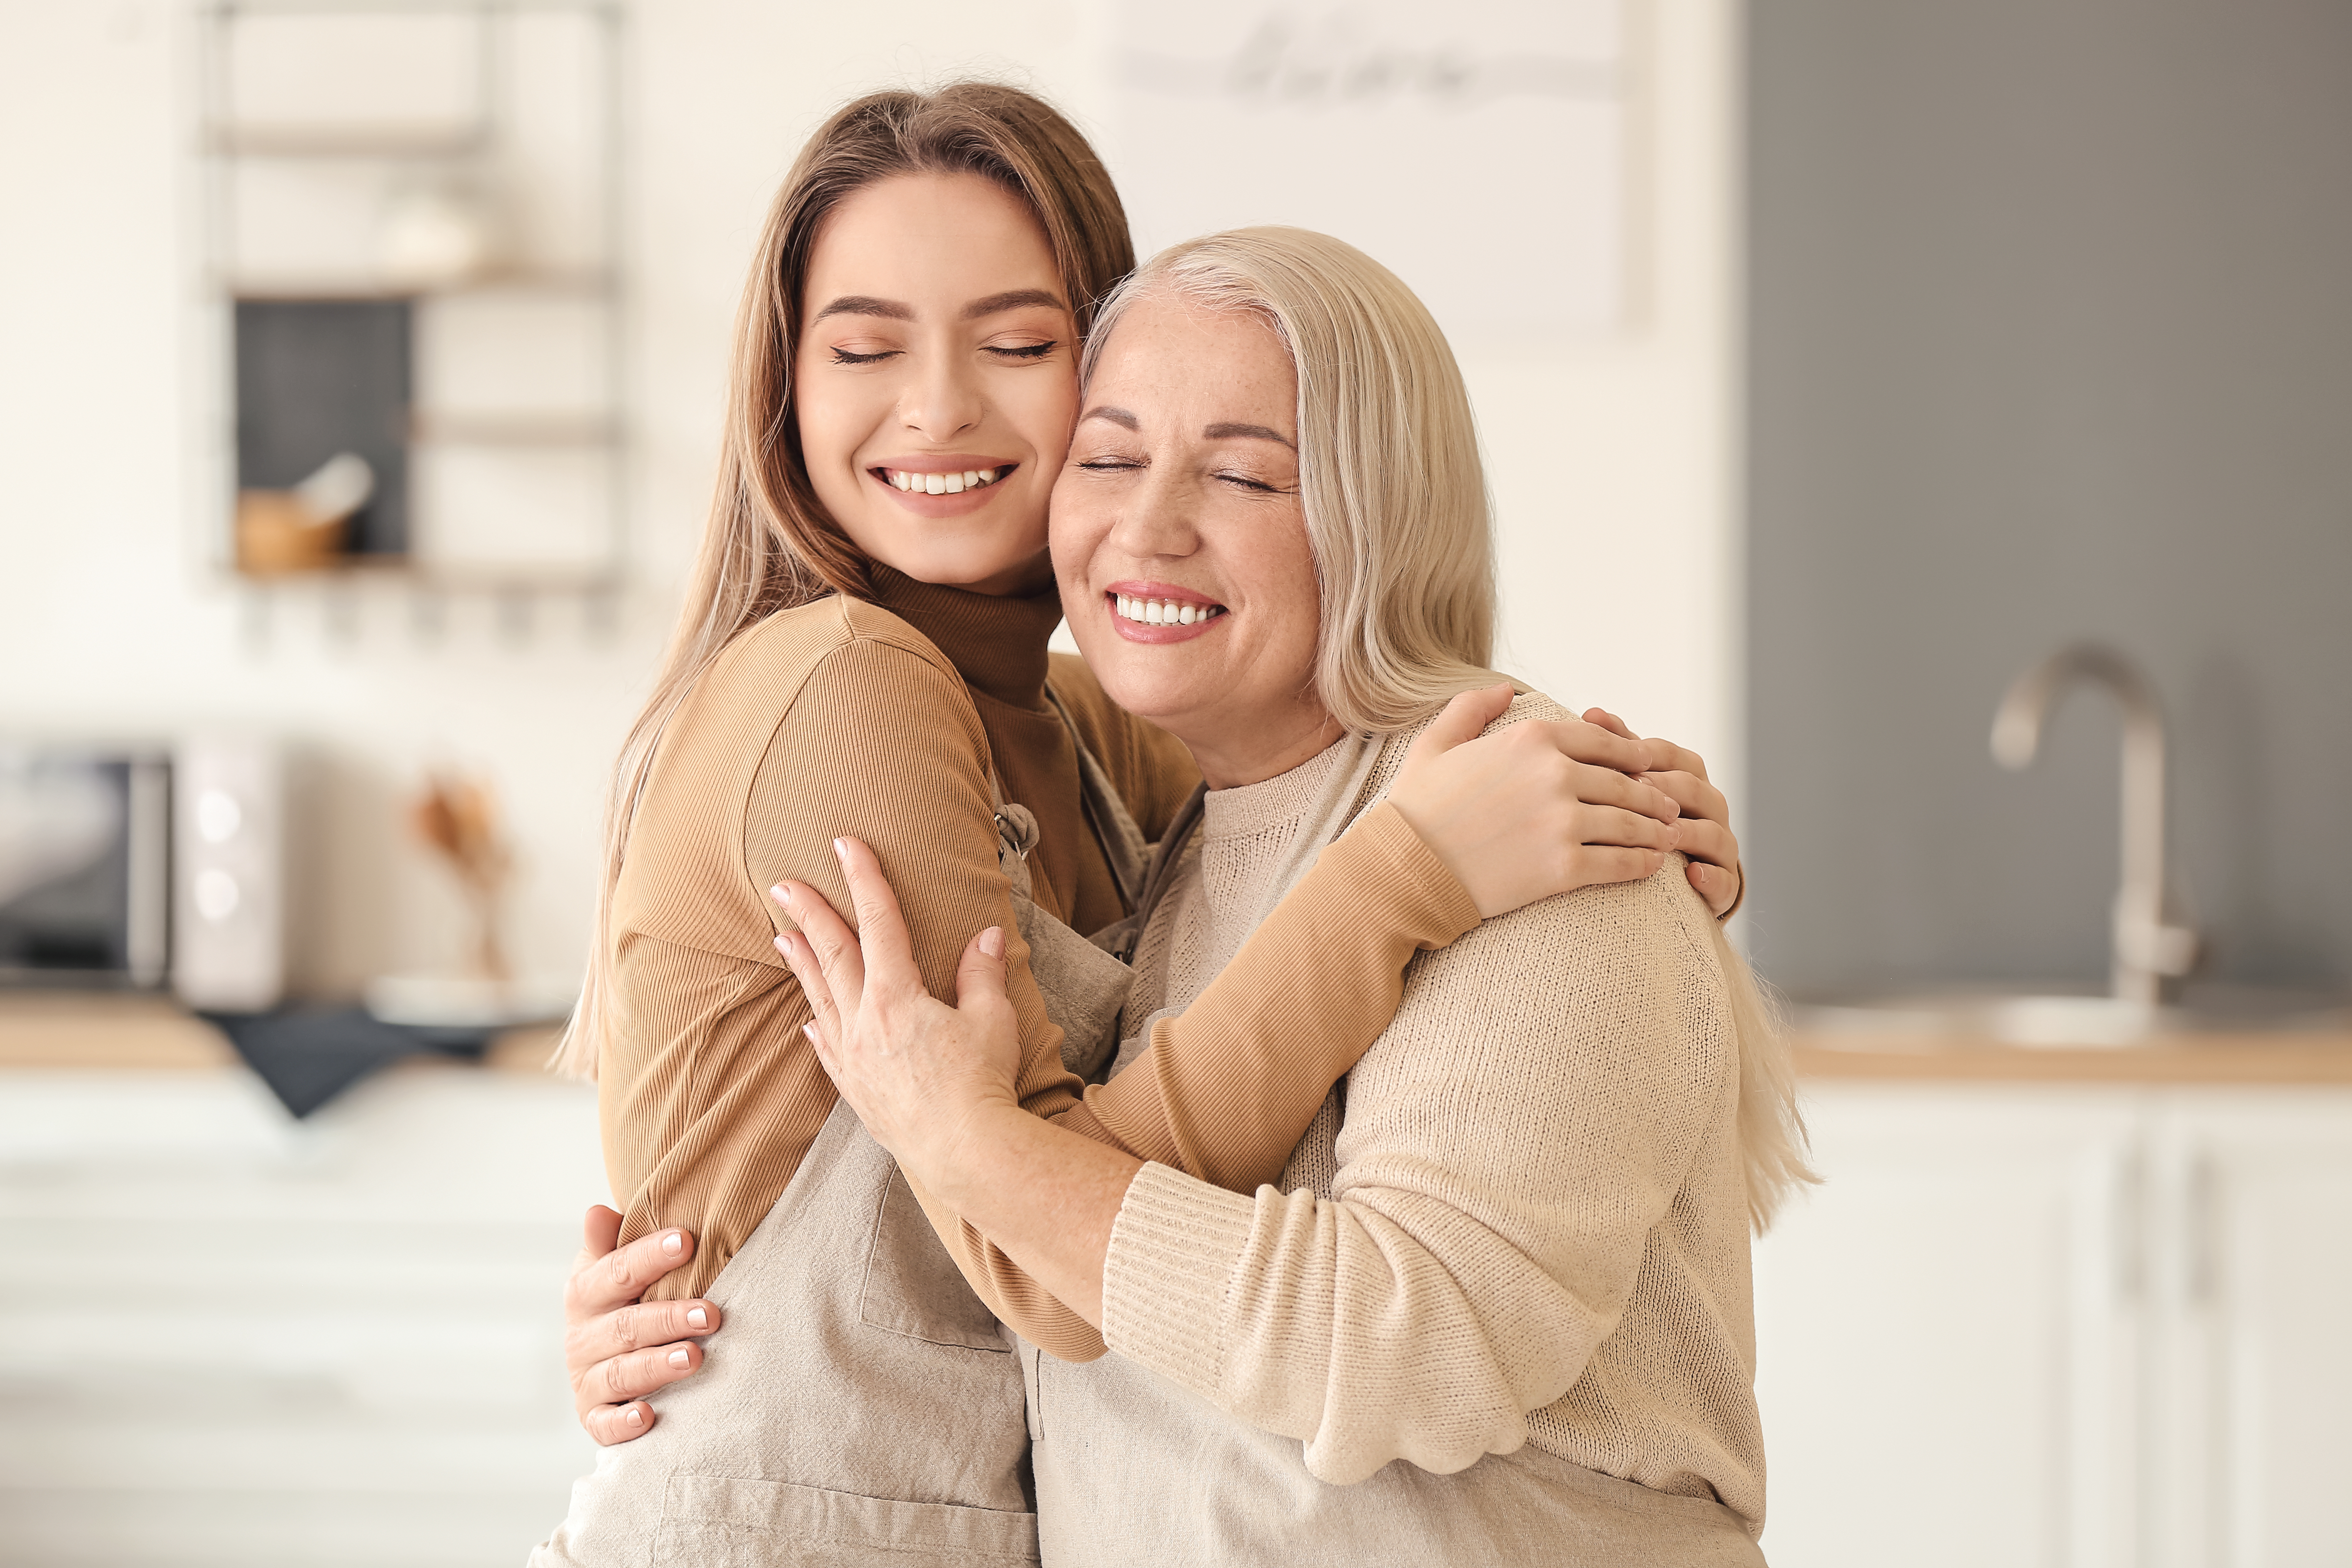 Una joven abrazando a su madre | Fuente: Shutterstock